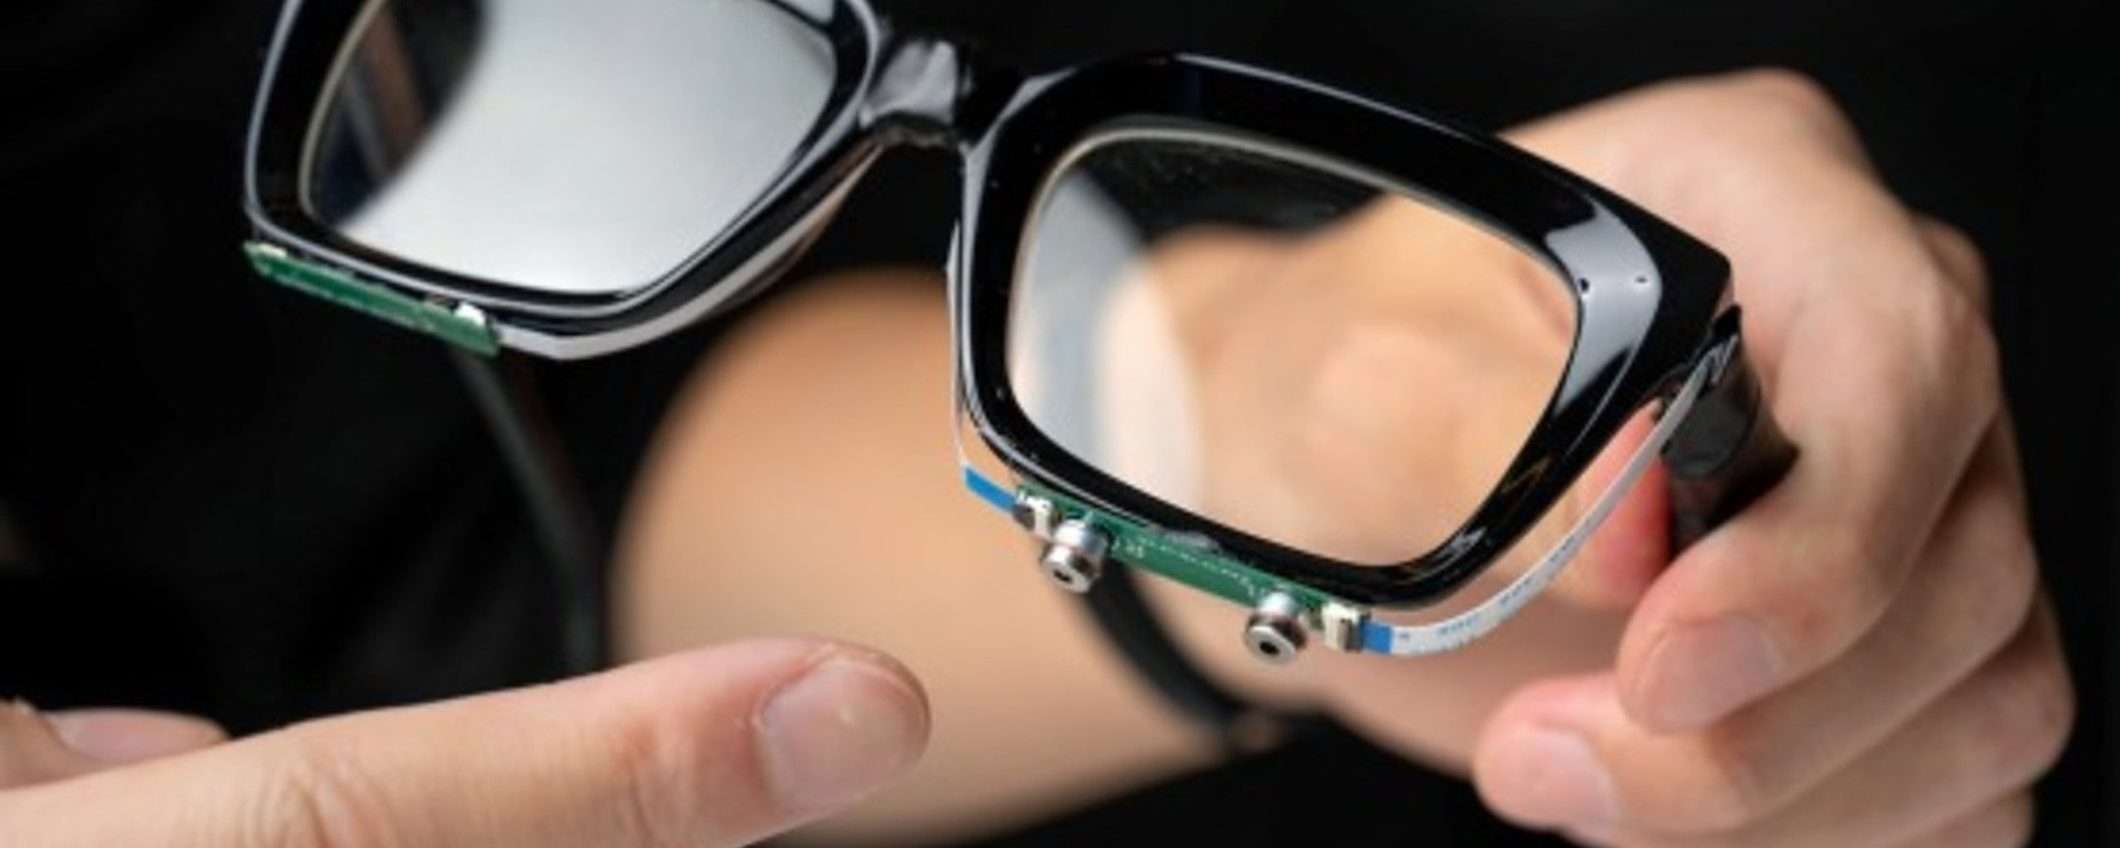 Questi occhiali con IA possono leggere il labiale